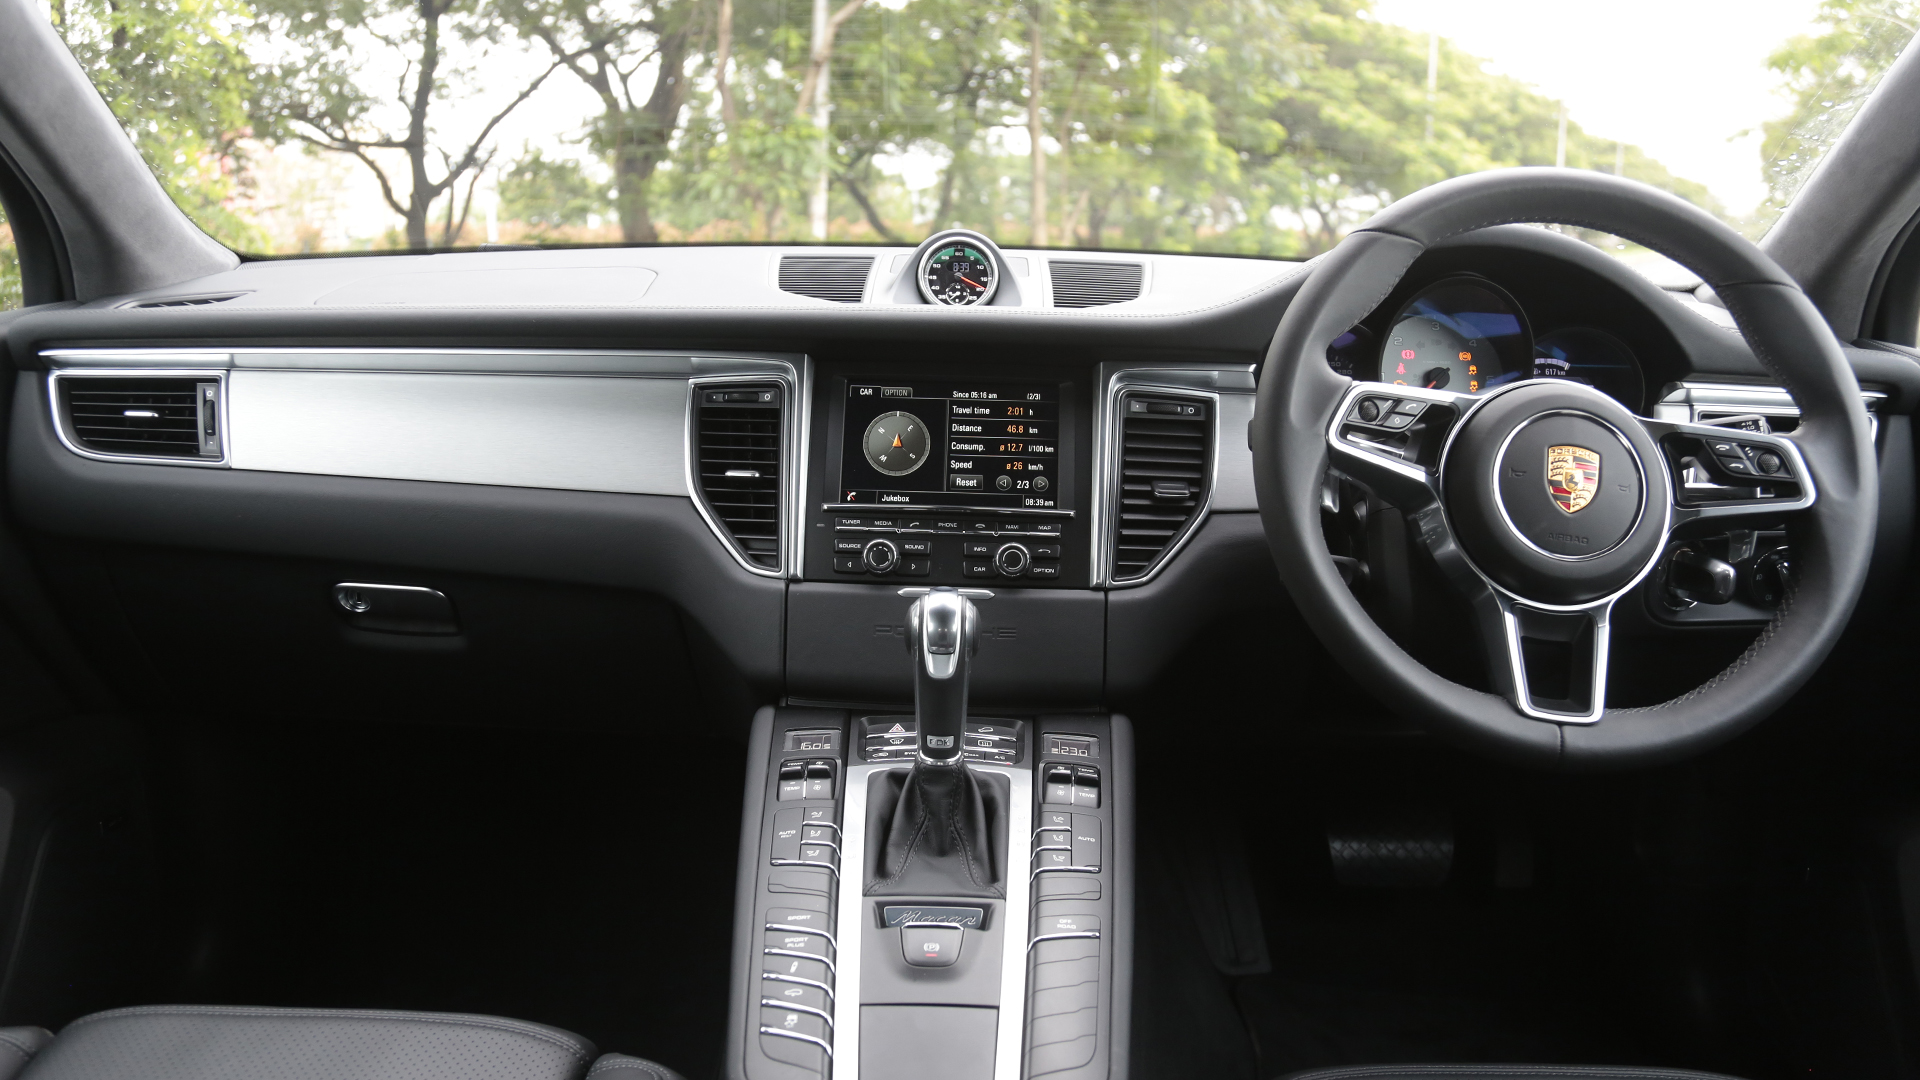 Porsche Macan 2014 S Diesel Interior